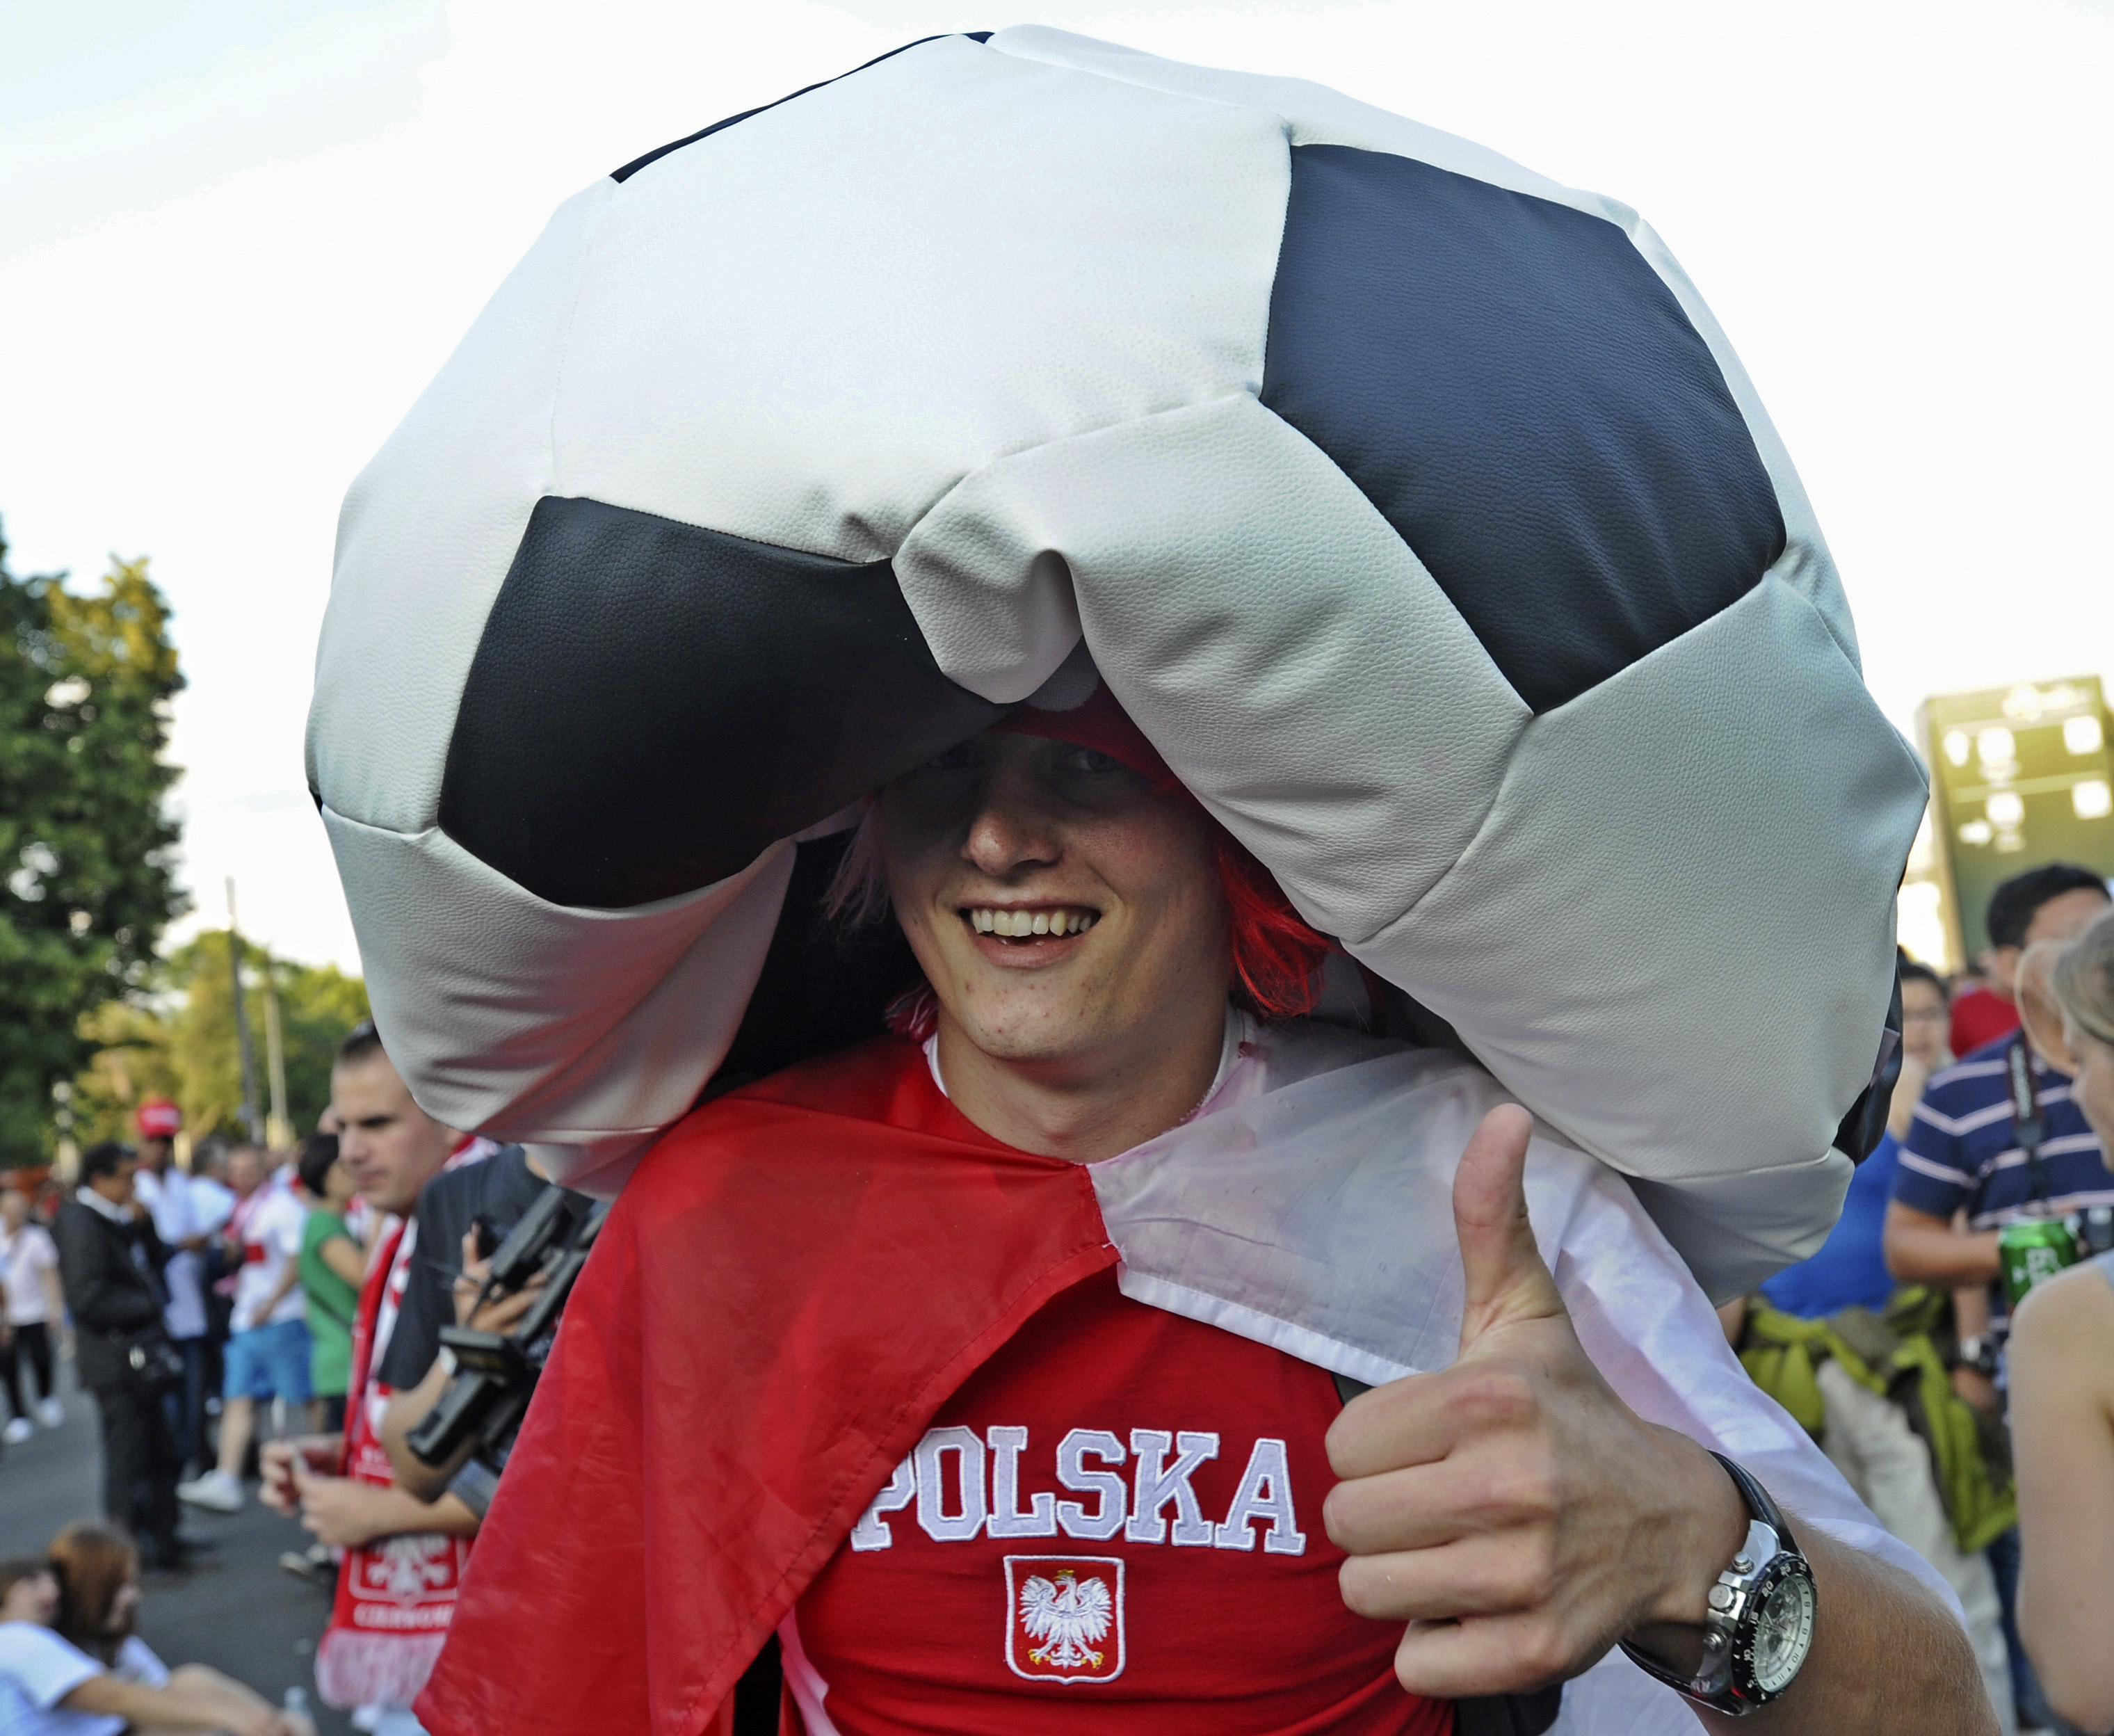 Ett polskt fan med en enormt stor hatt på väg till matchen mellan Tjeckien och Portugal.